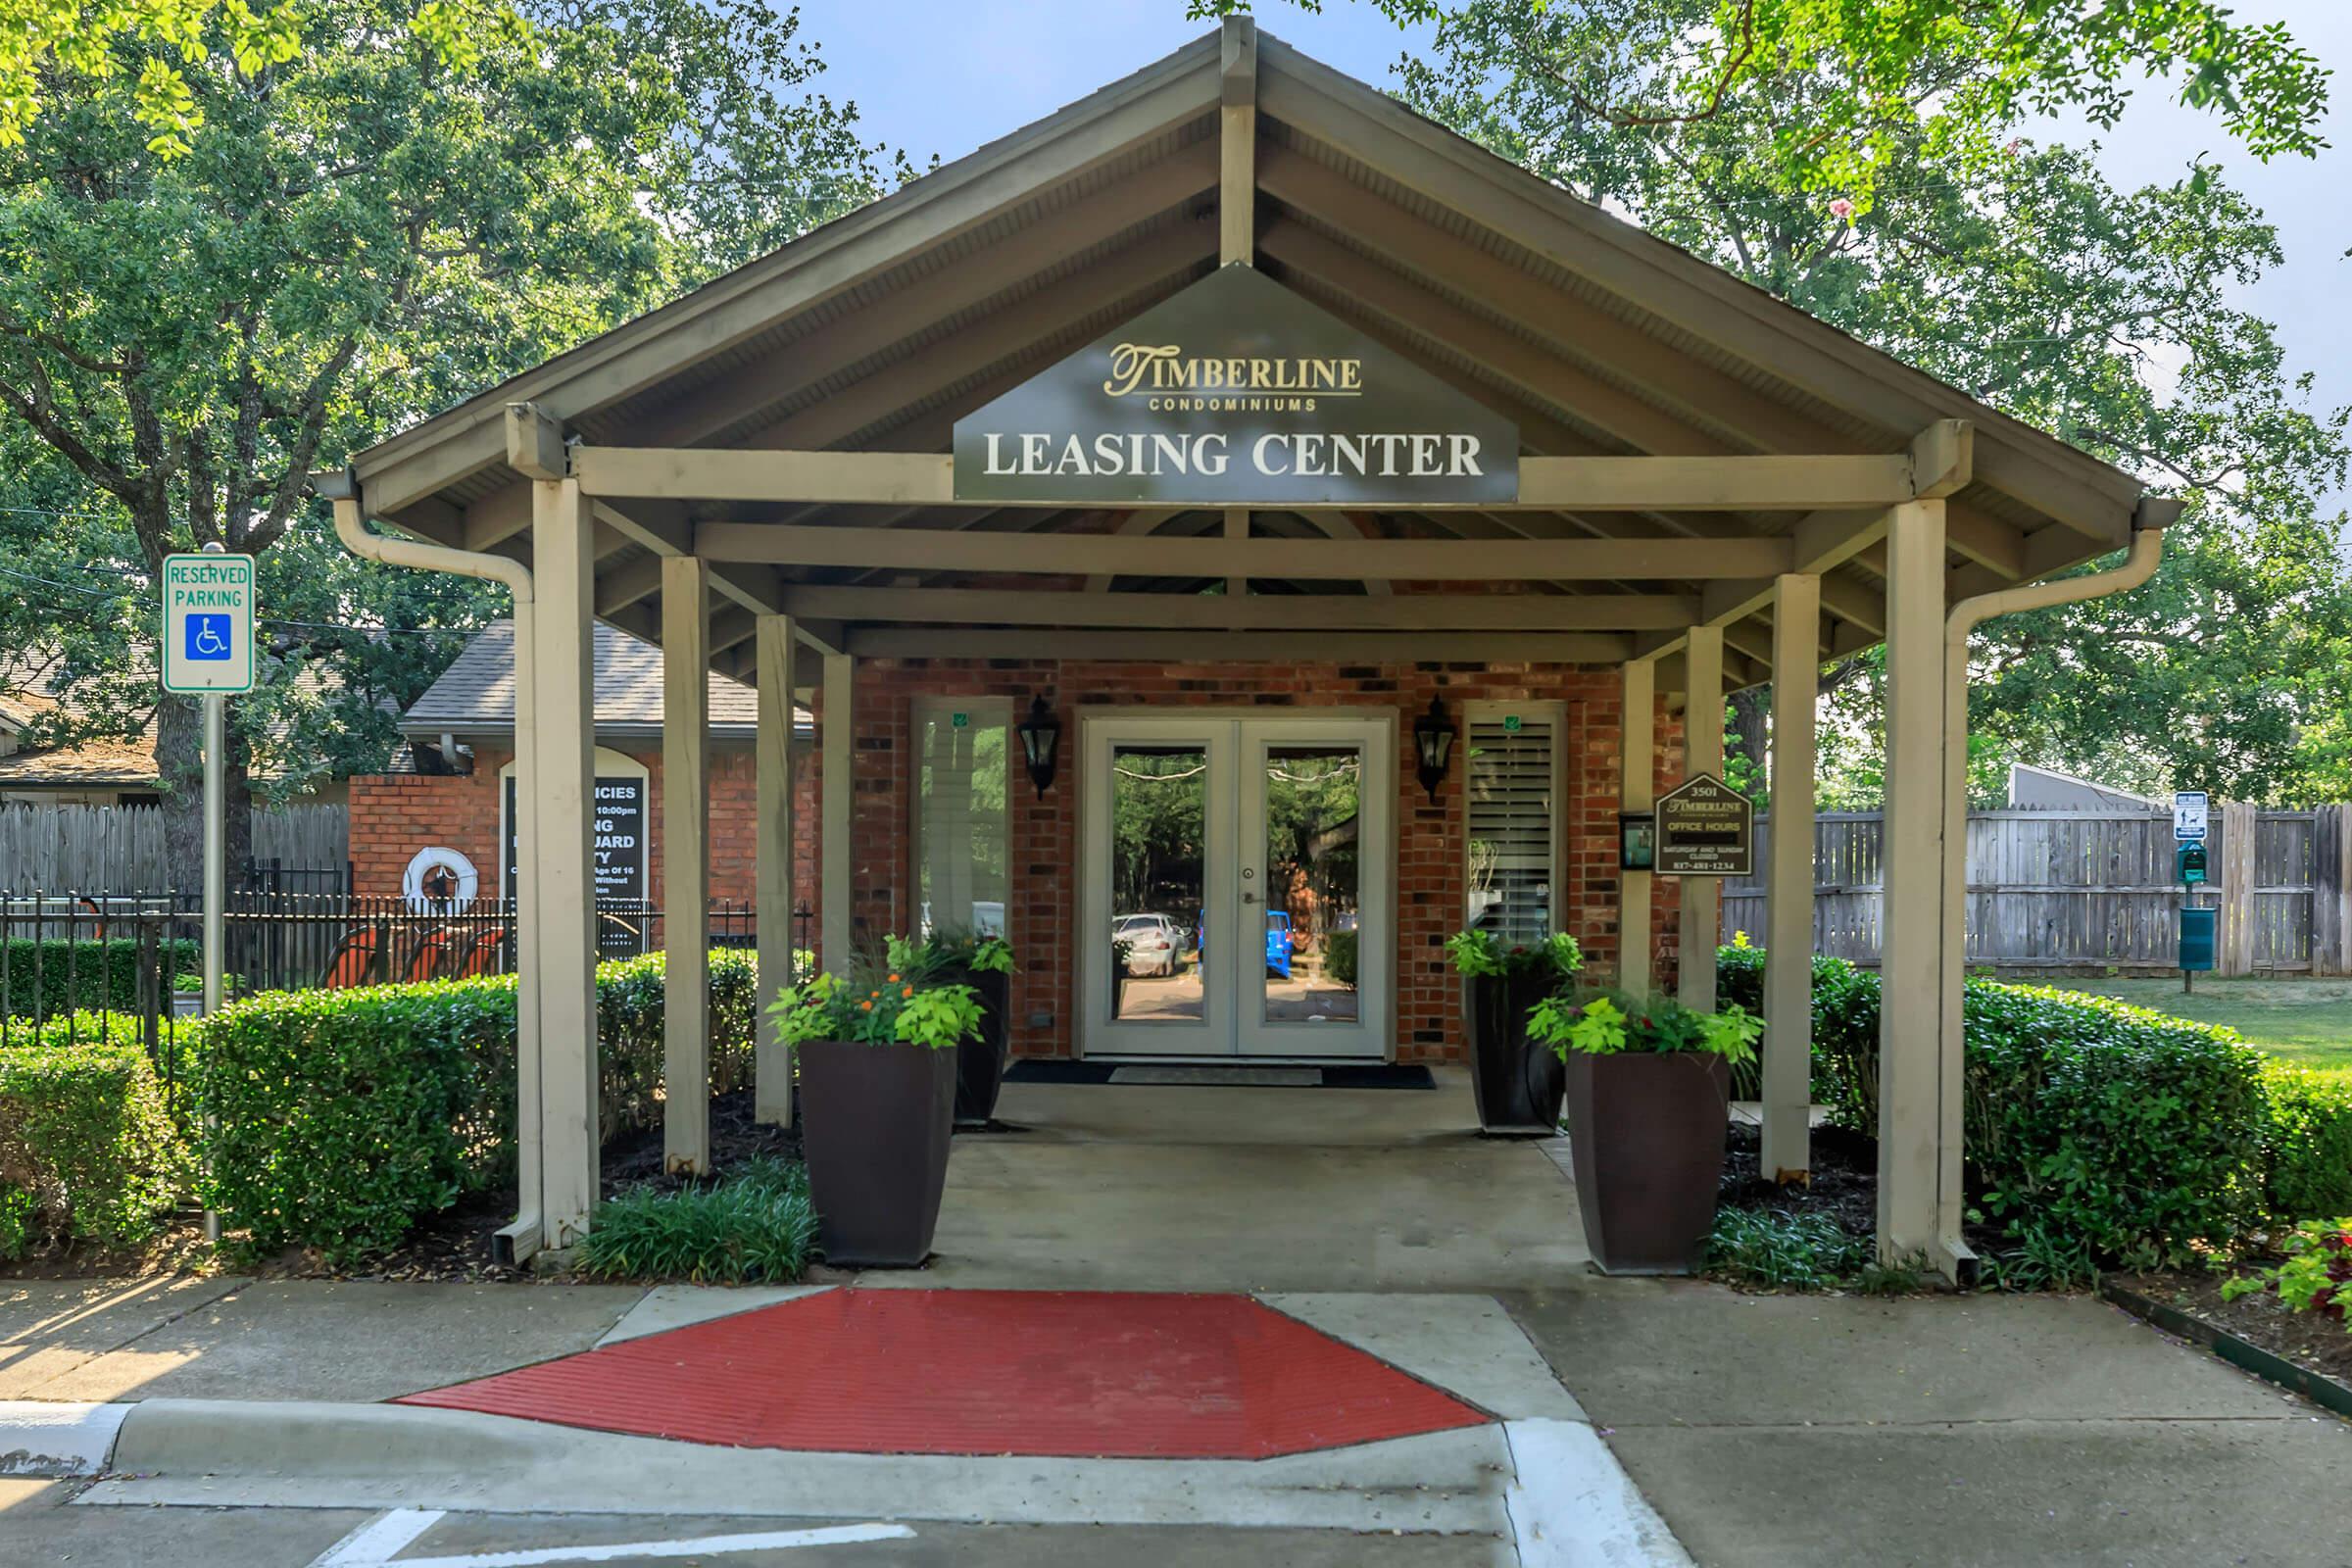 Timberline Condominiums leasing center